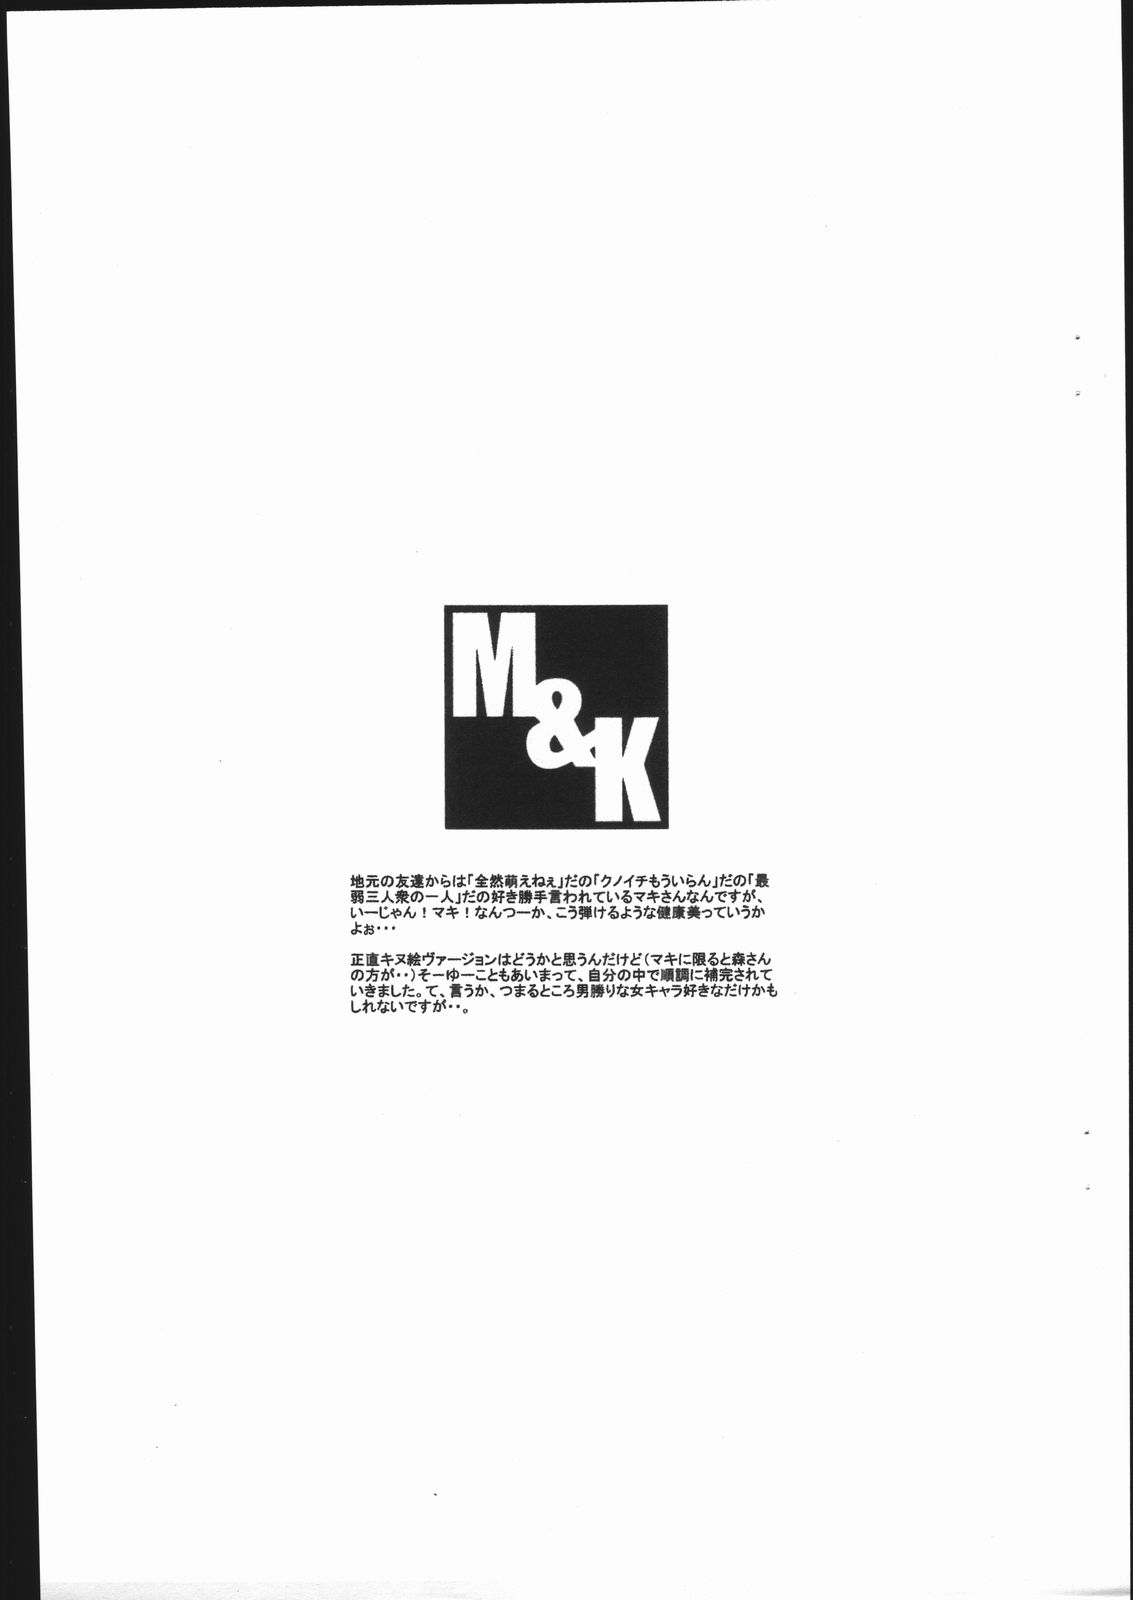 [Mushimusume Aikoukai] M&K (CAPCOM) page 17 full